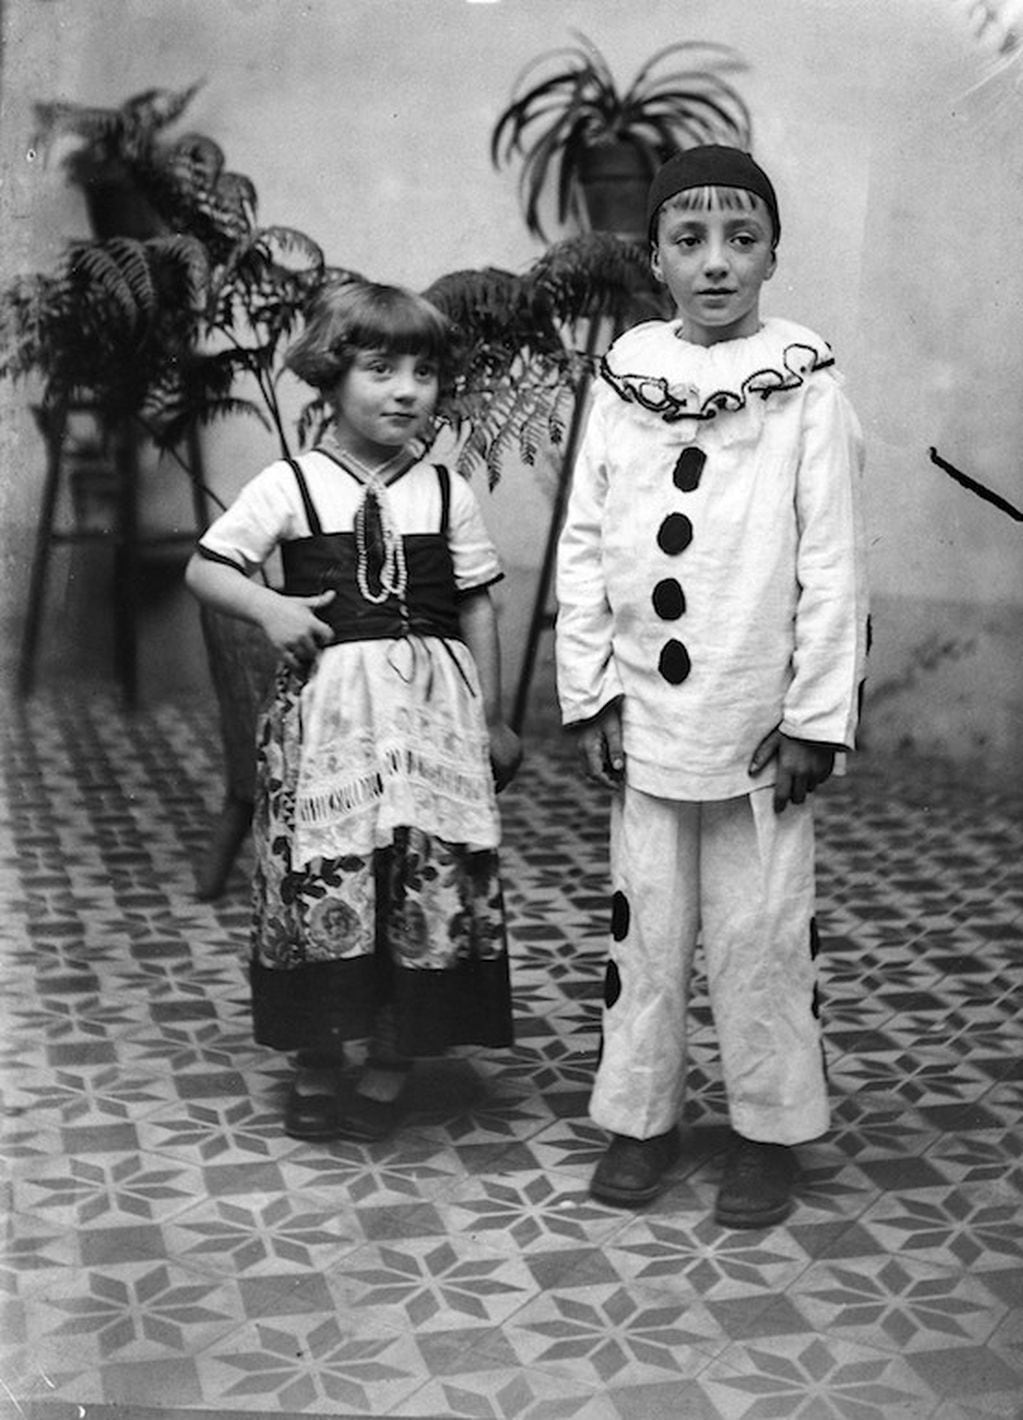 Carnaval de Gualeguaychú - HISTORIA del Corso infantil (archivo Casa Haedo)
Crédito: Museo del Carnaval